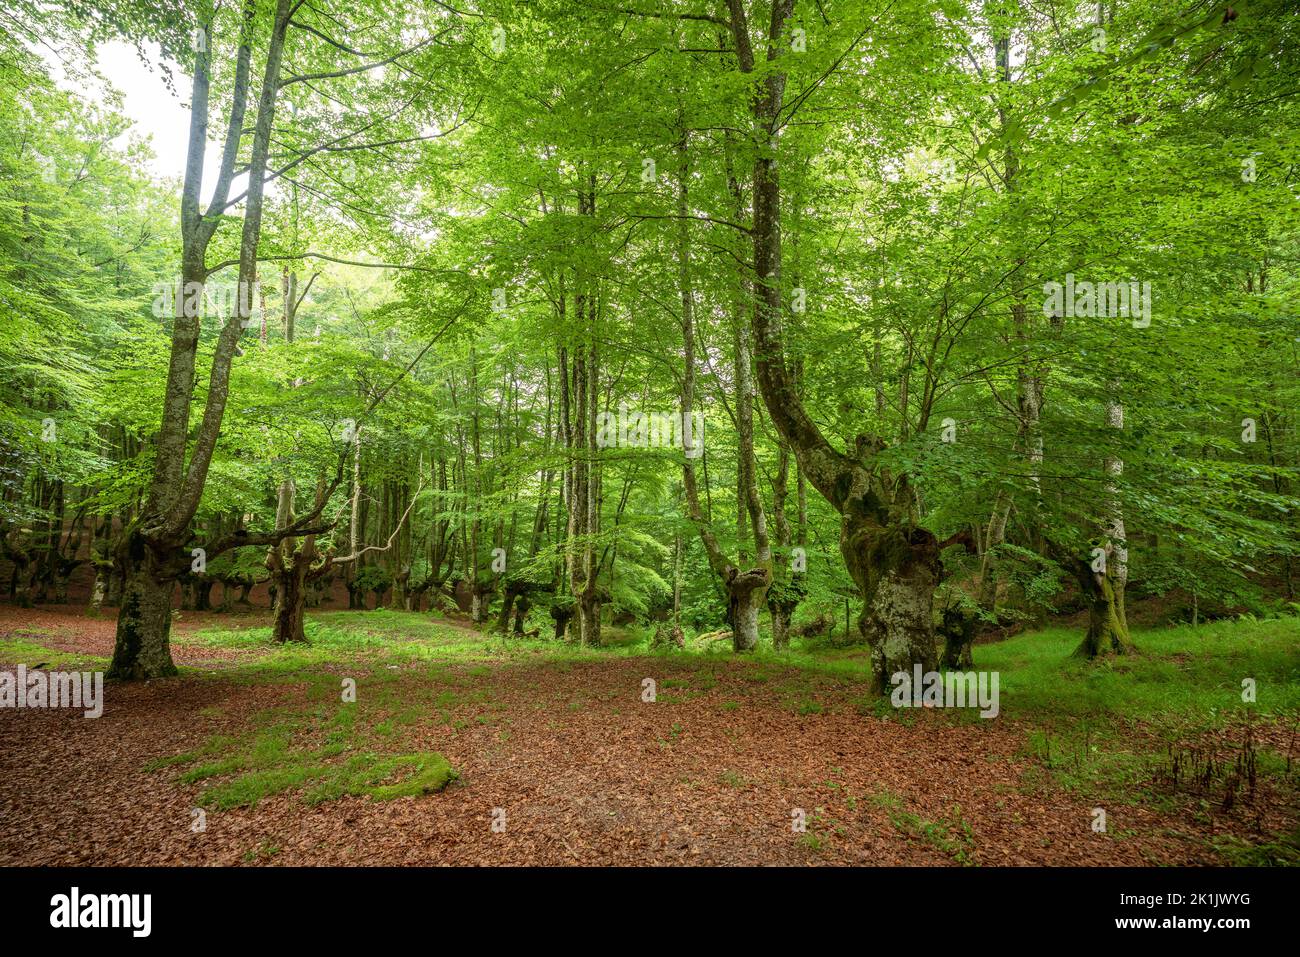 Paysage forêt de hêtre à feuilles dans le Parc naturel d'Urkiola, pays Basque, Espagne Banque D'Images